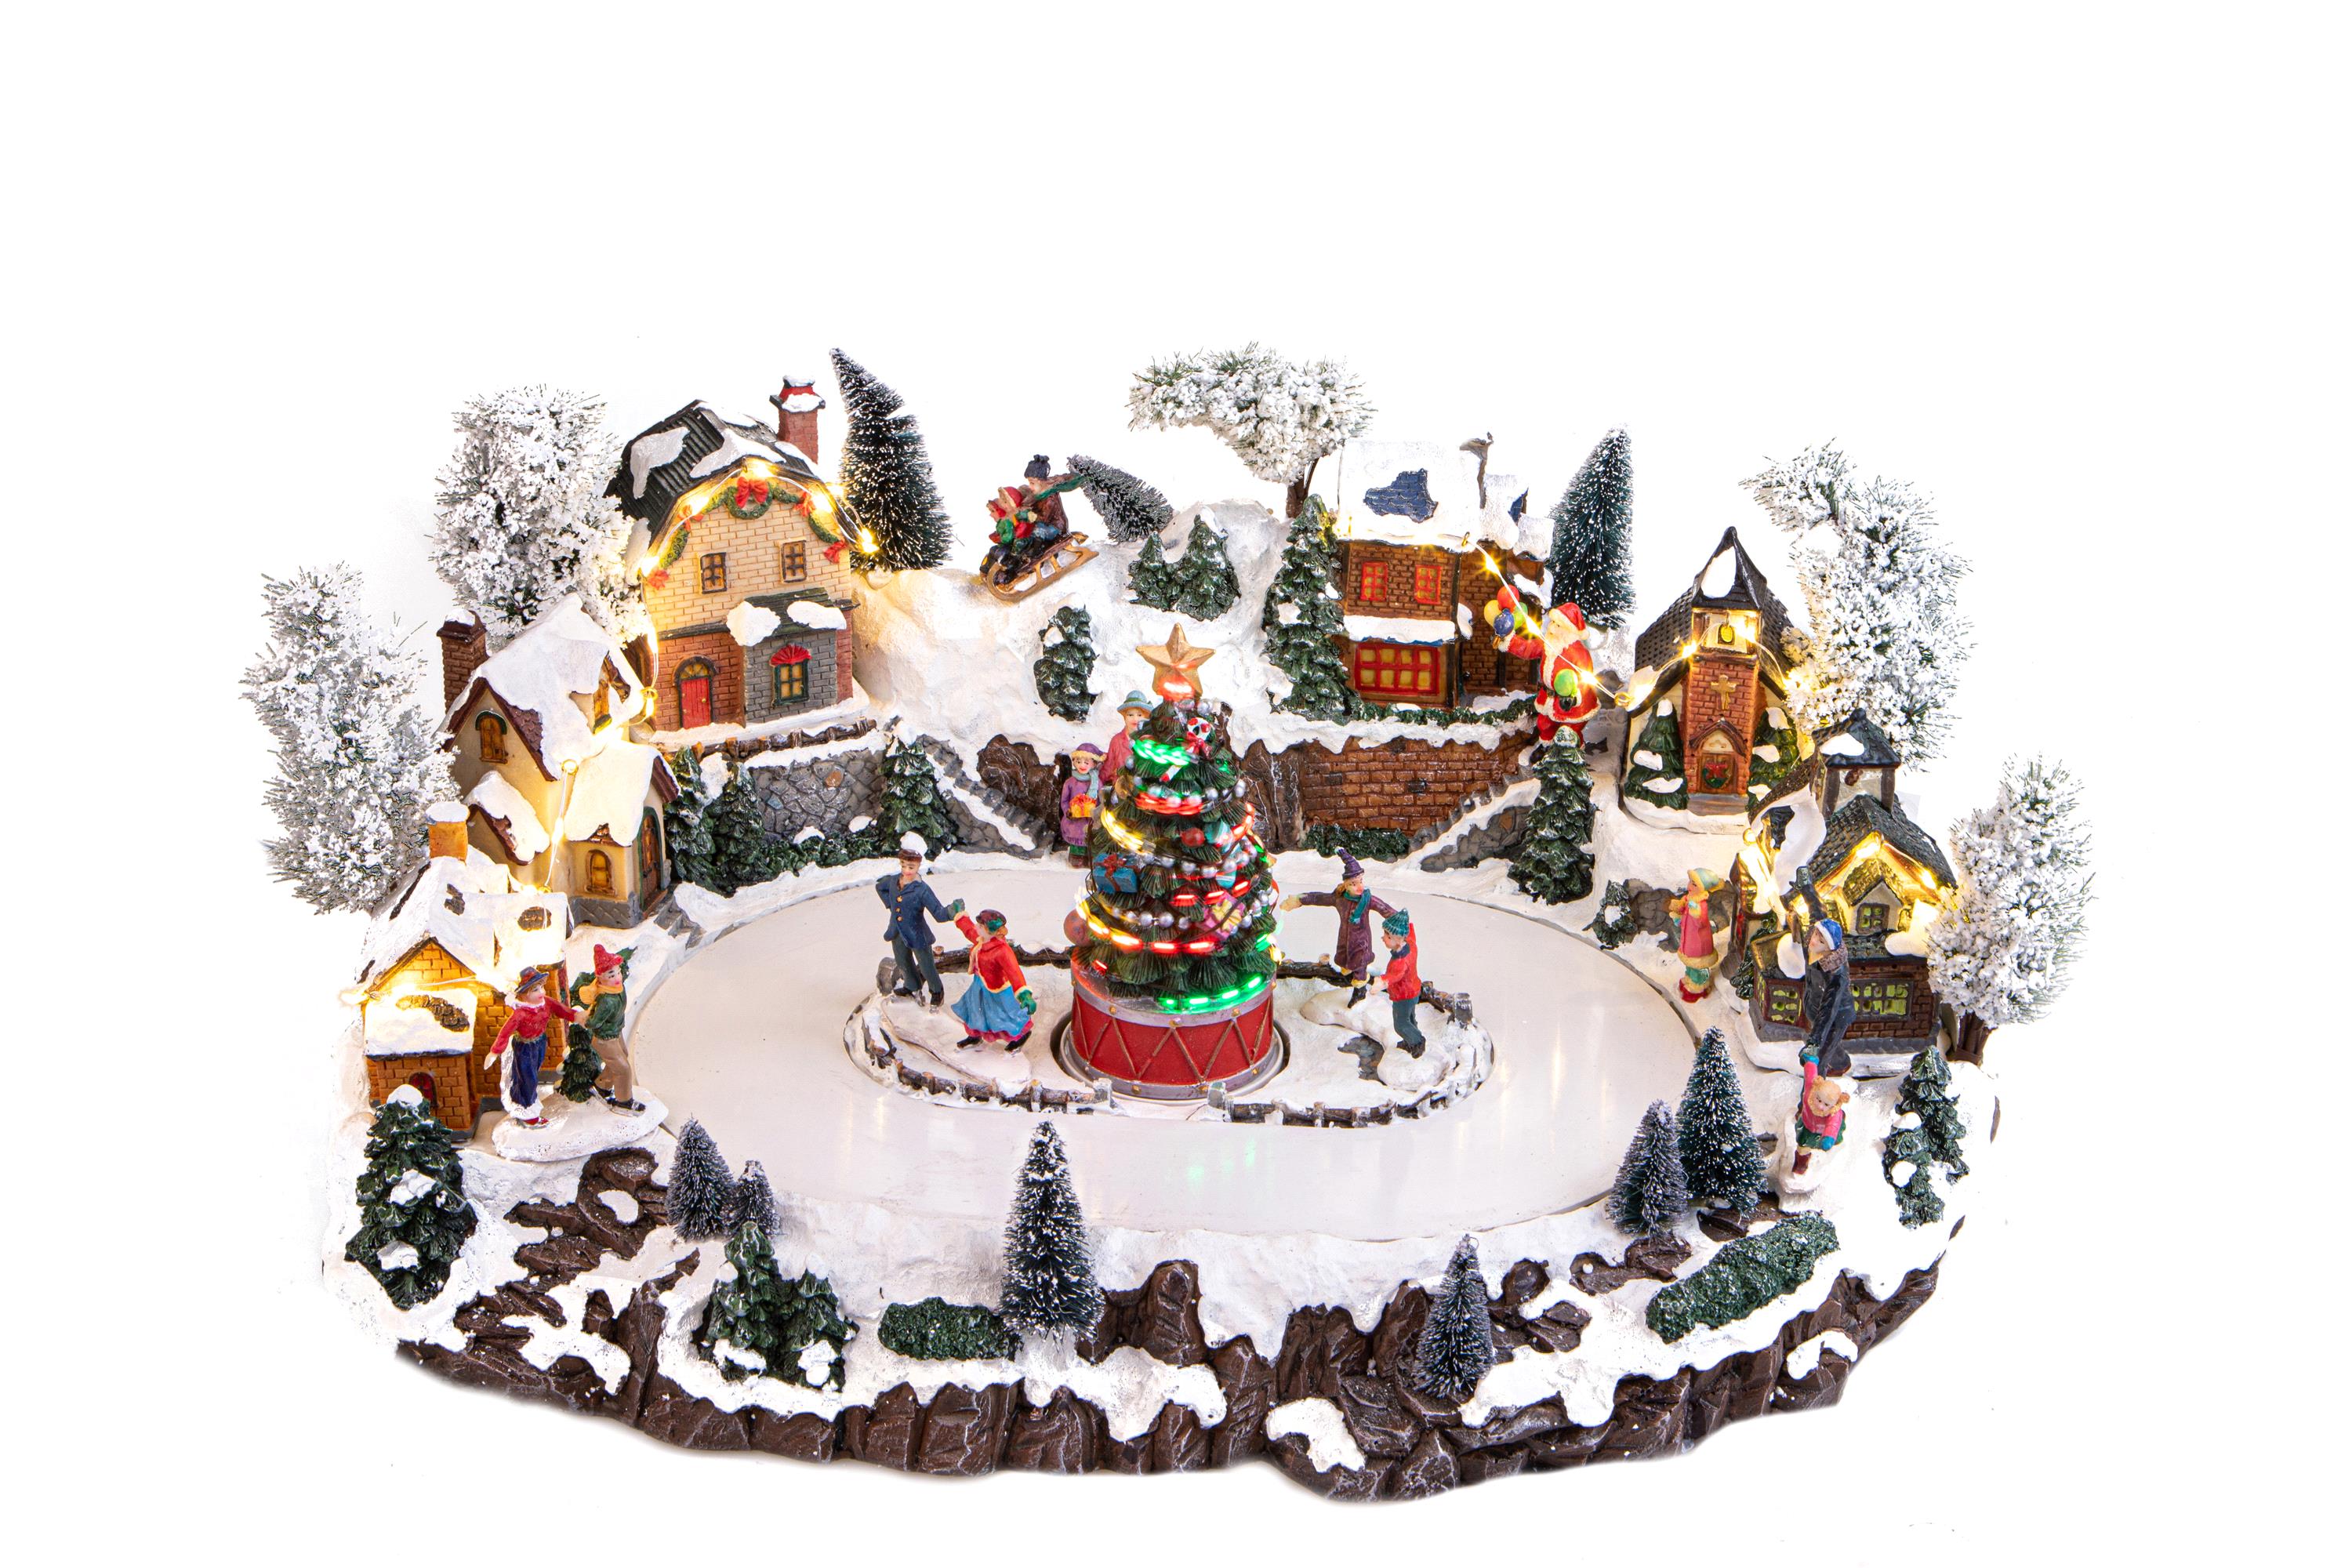 Weihnachtsartikel, Landschaften, Glockenspiel in HARZ, VILLAGGIO 49XH26 CM LAGO MOV+MUS+LUCI